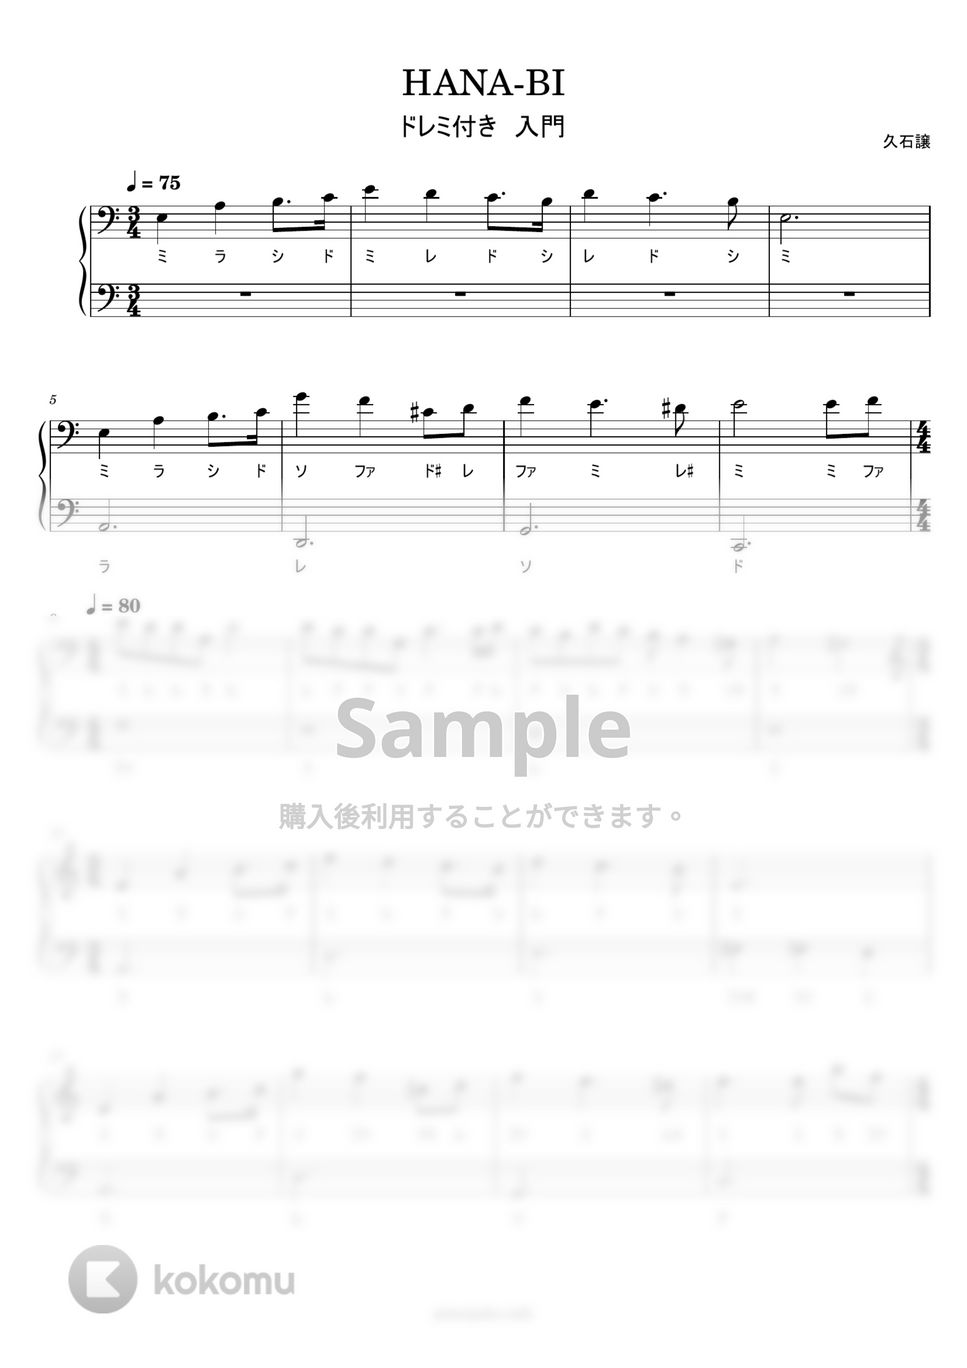 久石譲 - HANA-BI (ドレミ付き簡単楽譜) by ピアノ塾